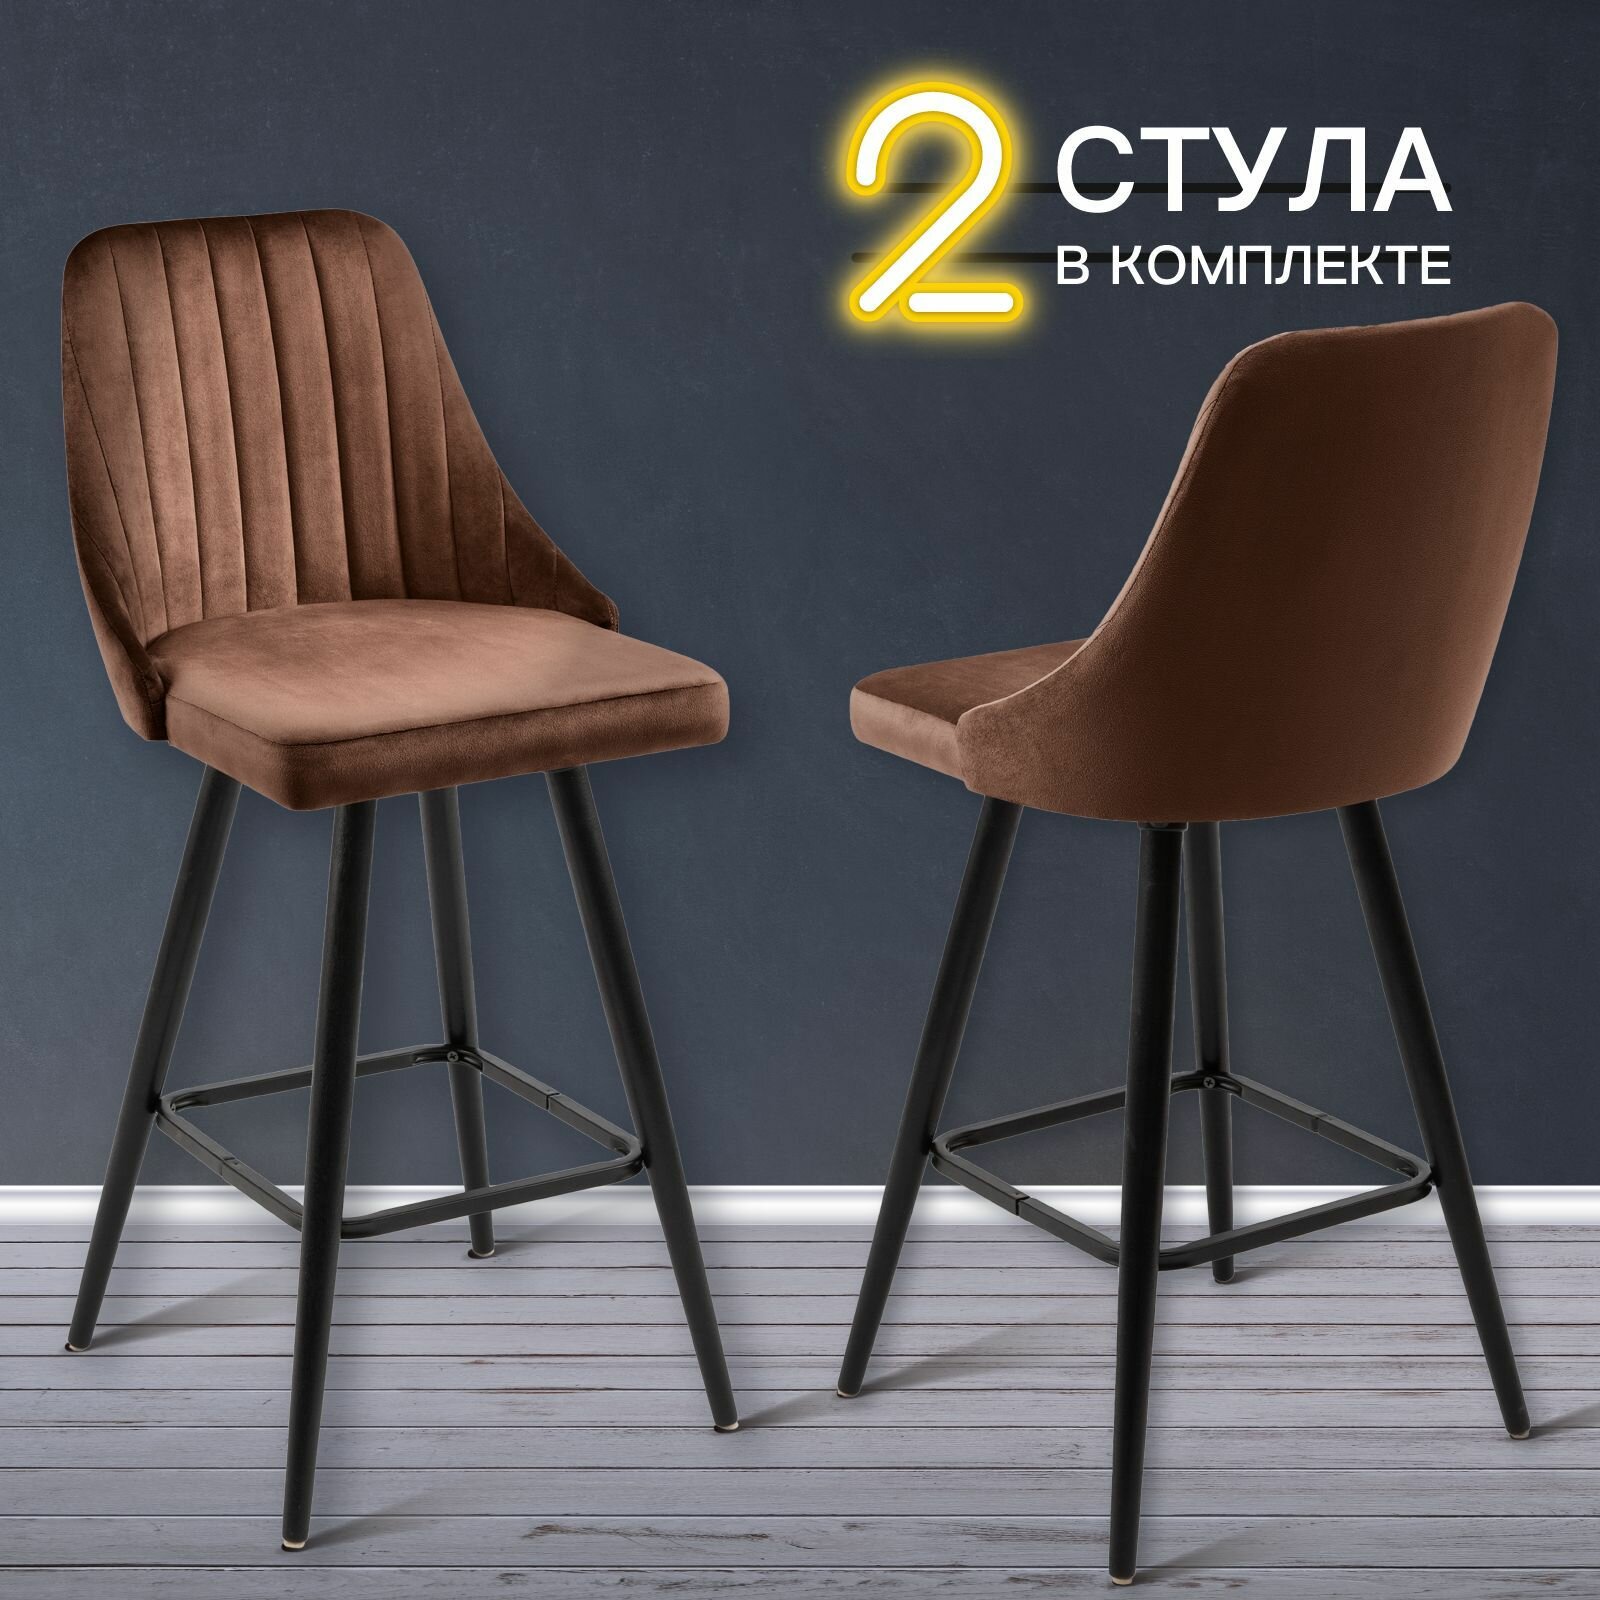 Барные стулья для кухни 2 штуки мягкие Лондон, обеденная группа, для дома, гостиной, кухонные стулья со спинкой, высокие ножки, обивка вельвет коричневый, АМИ мебель, Беларусь